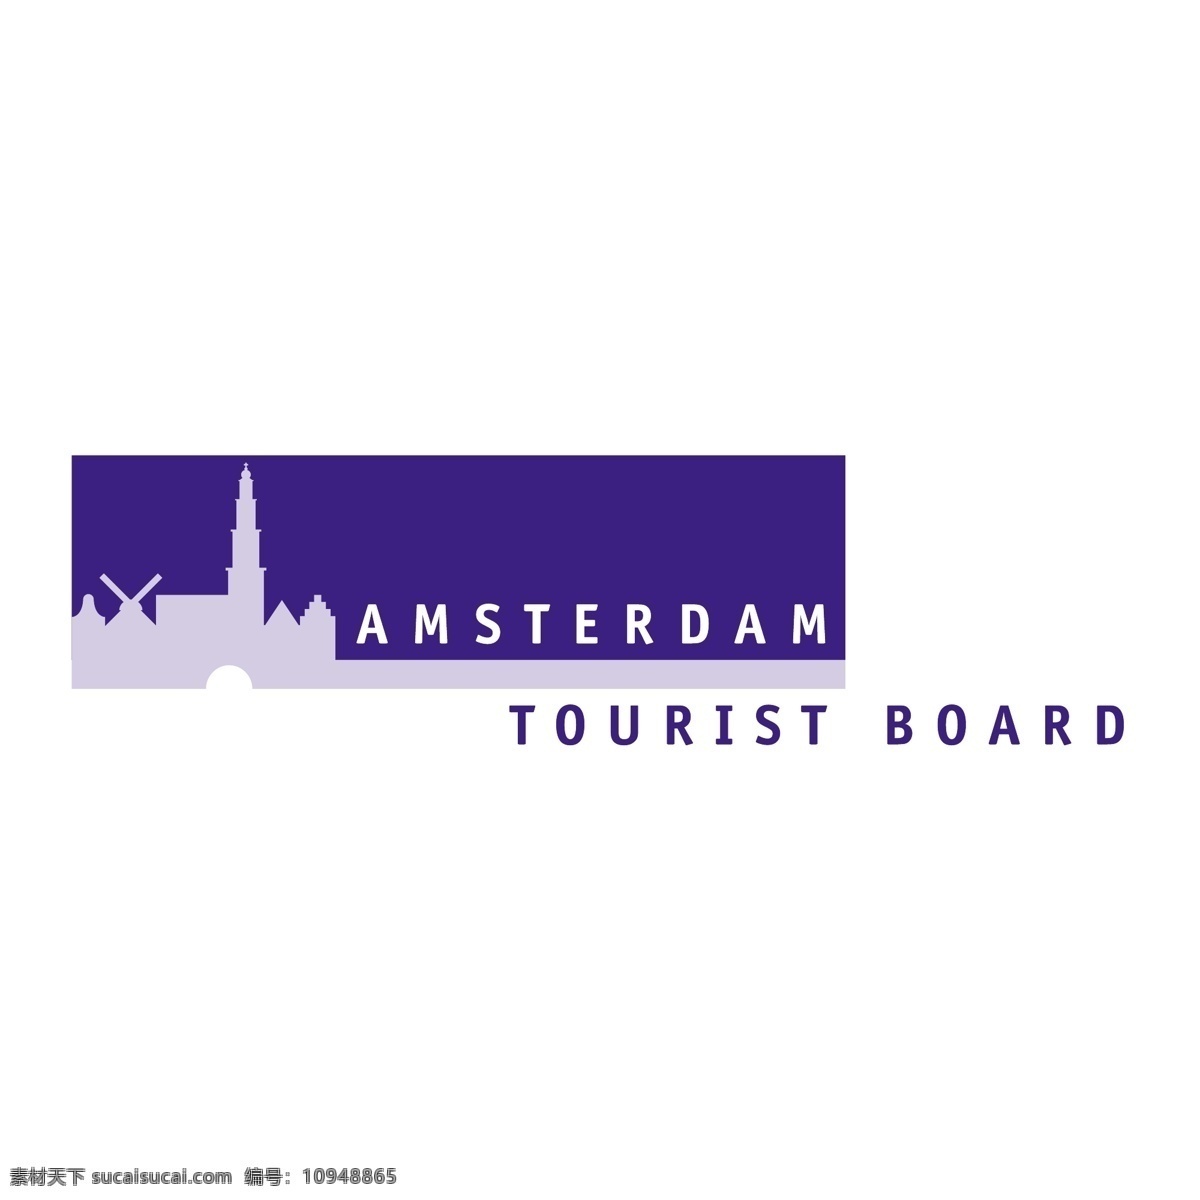 阿姆斯特丹 旅游局 自由 标志 psd源文件 logo设计